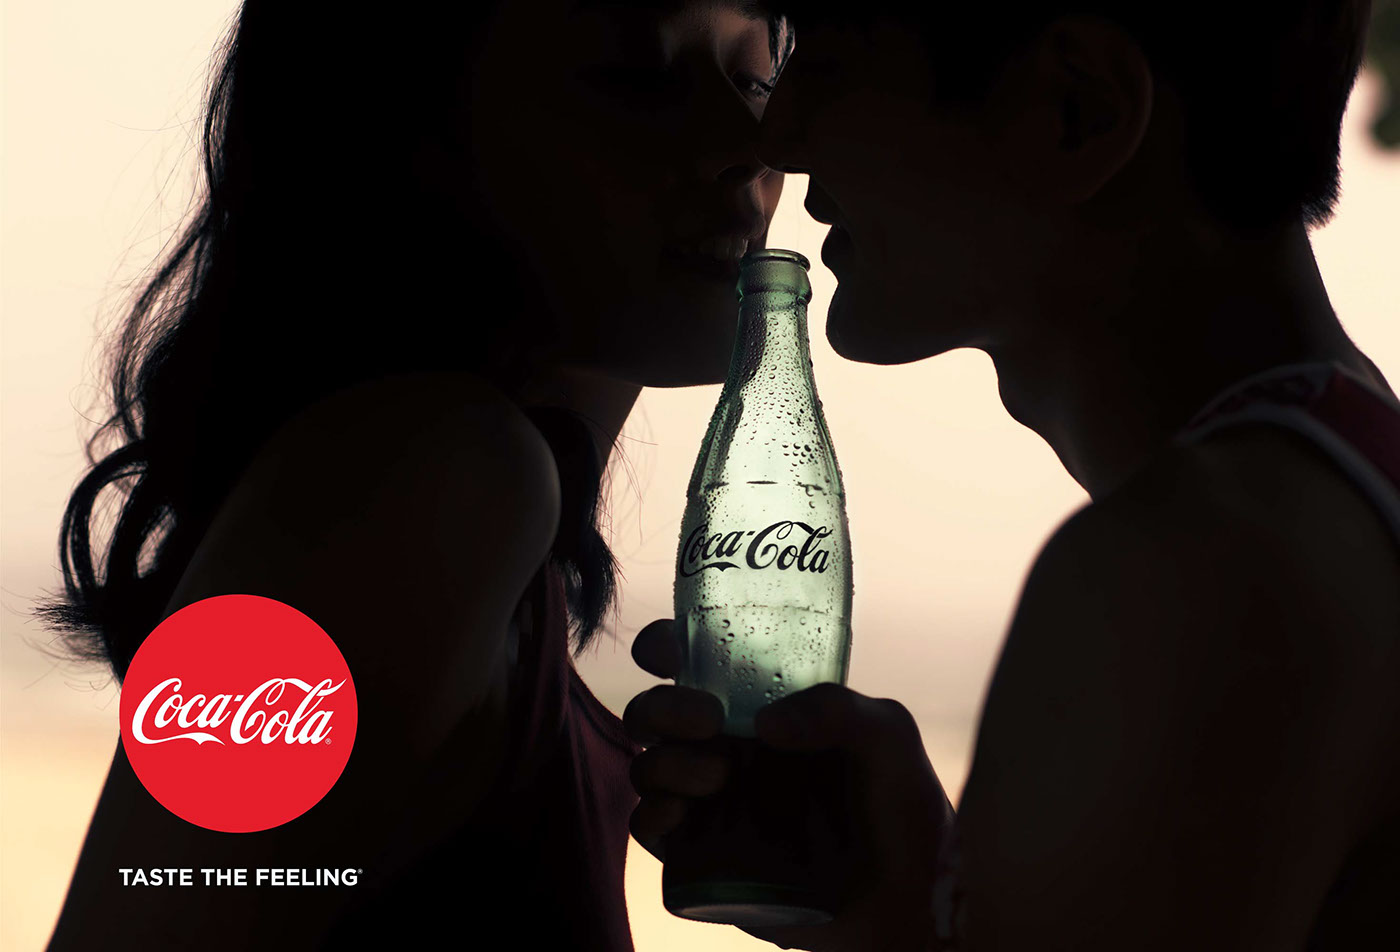 Taste the feeling. Coca Cola taste the feeling. Рюкзак Кока кола taste the feeling. Nicola taste the Love.